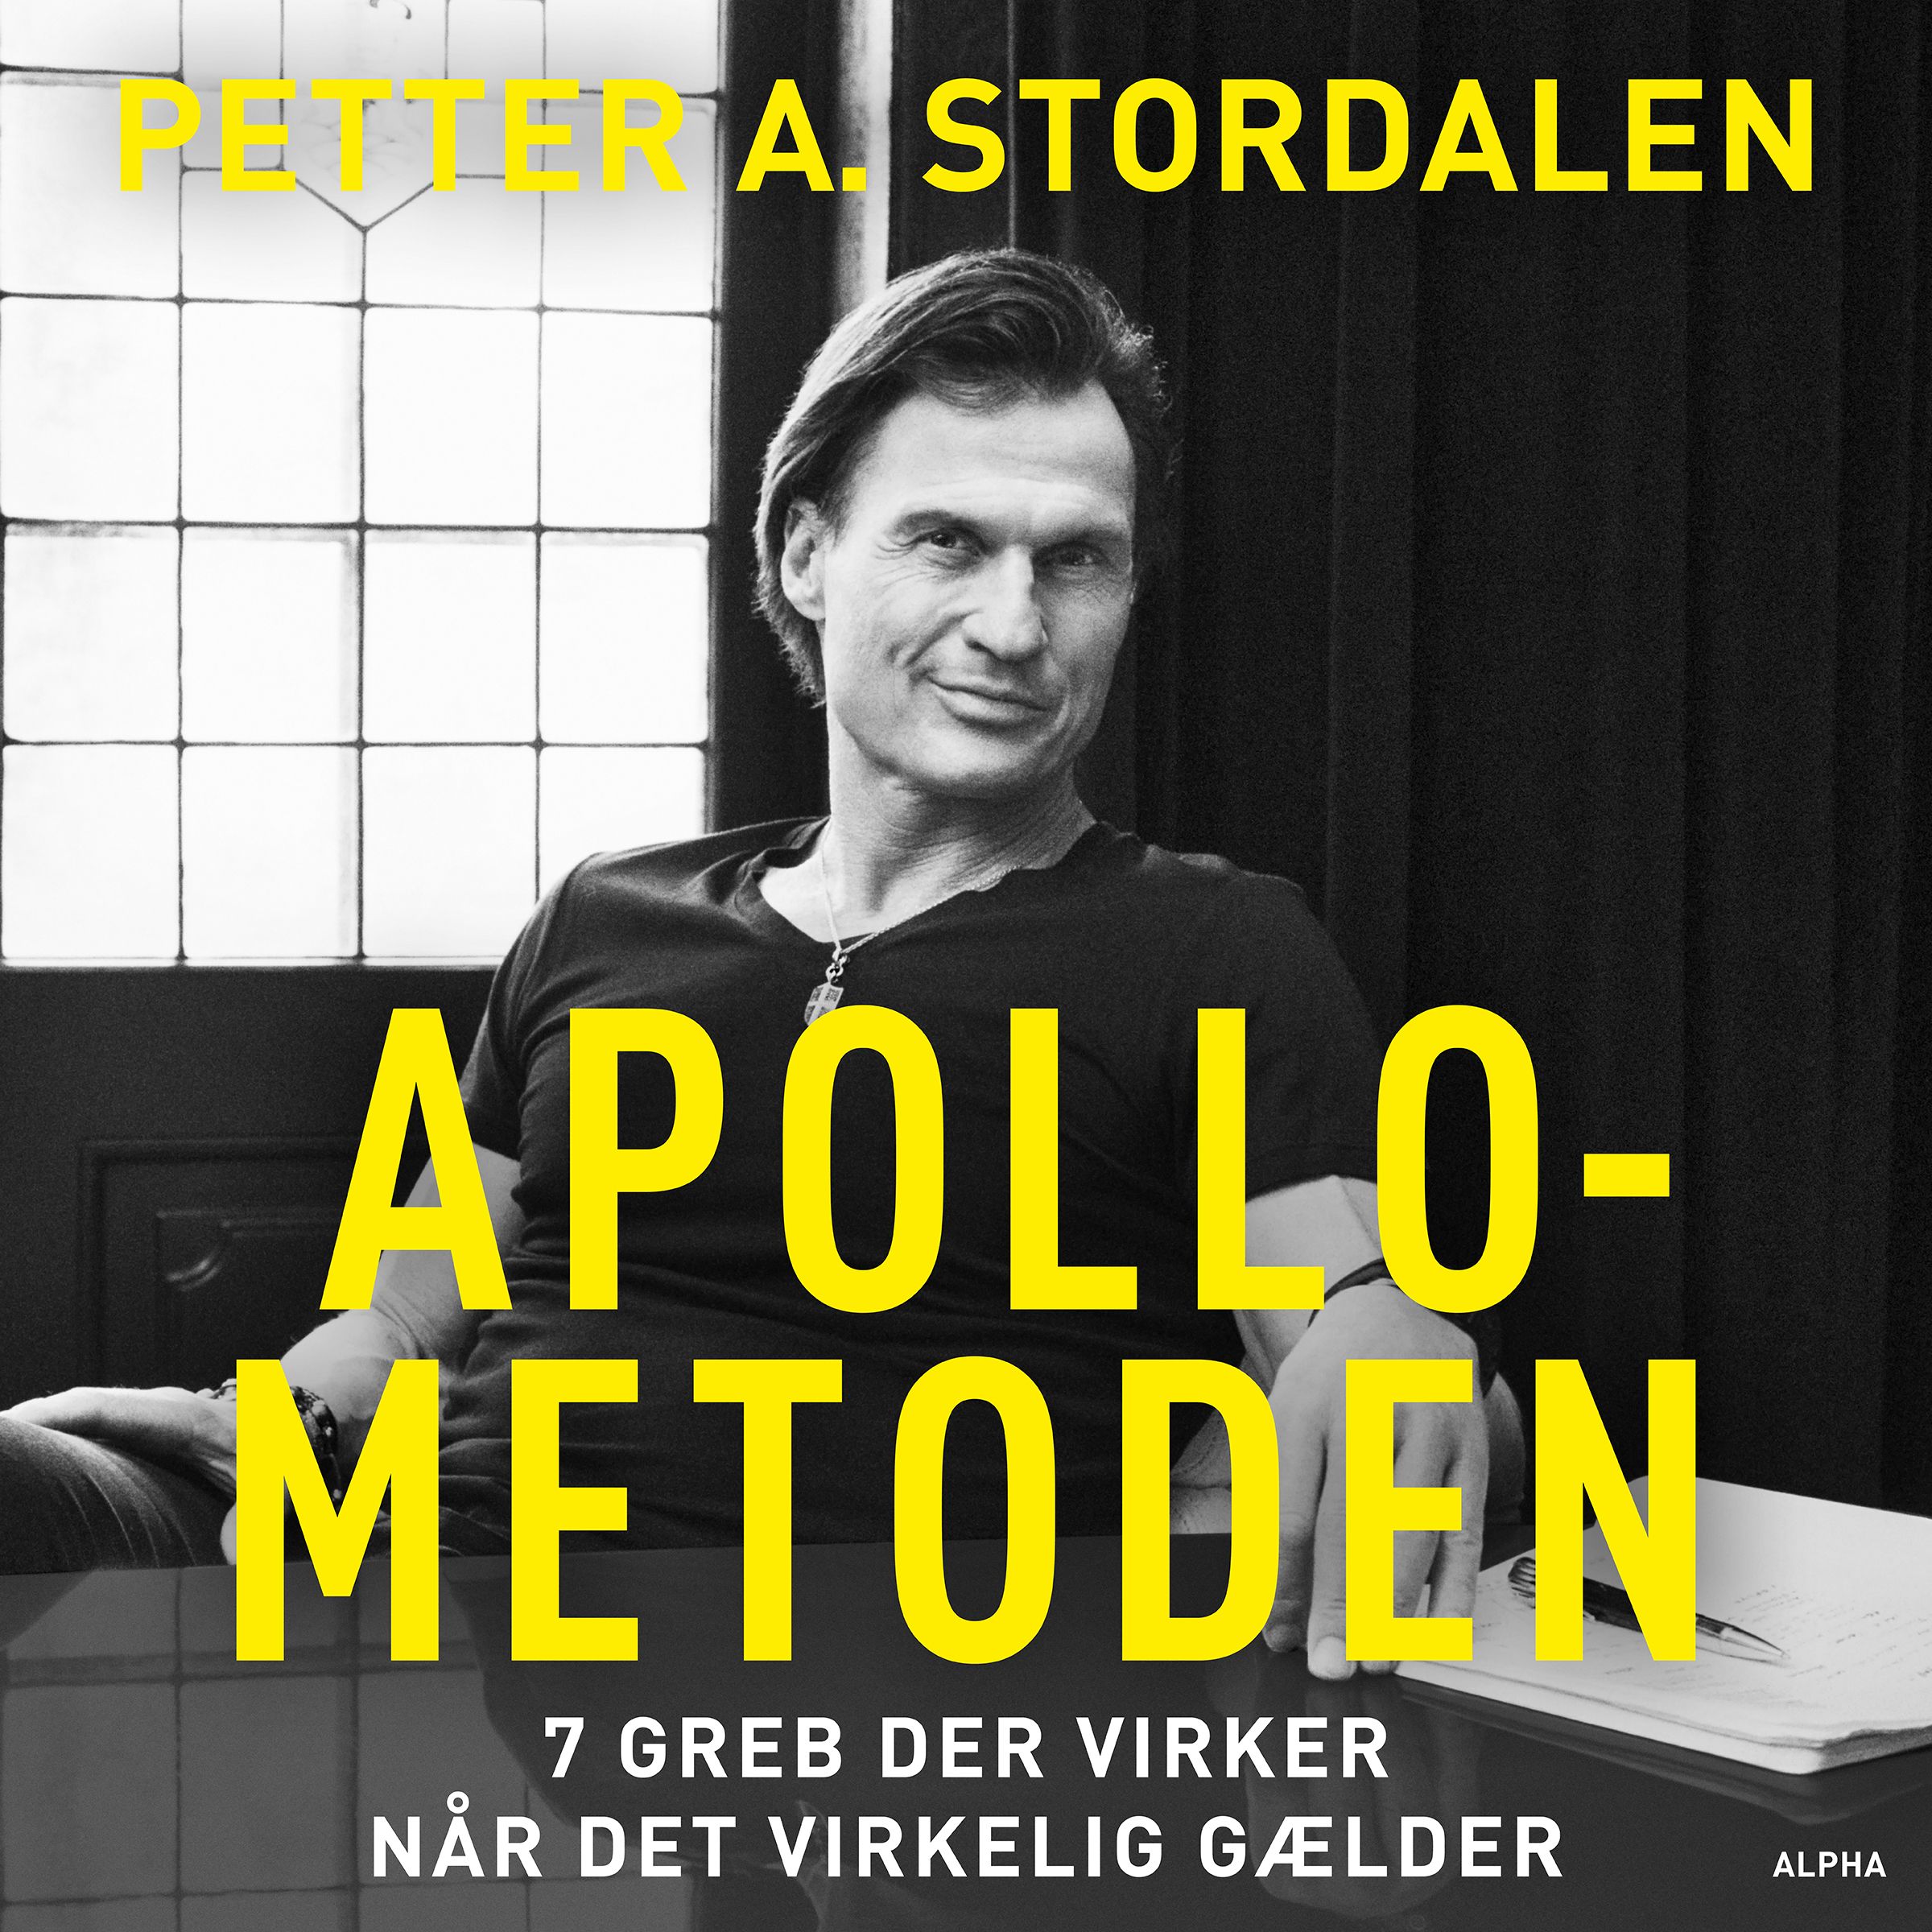 Apollo-metoden, lydbog af Petter A. Stordalen